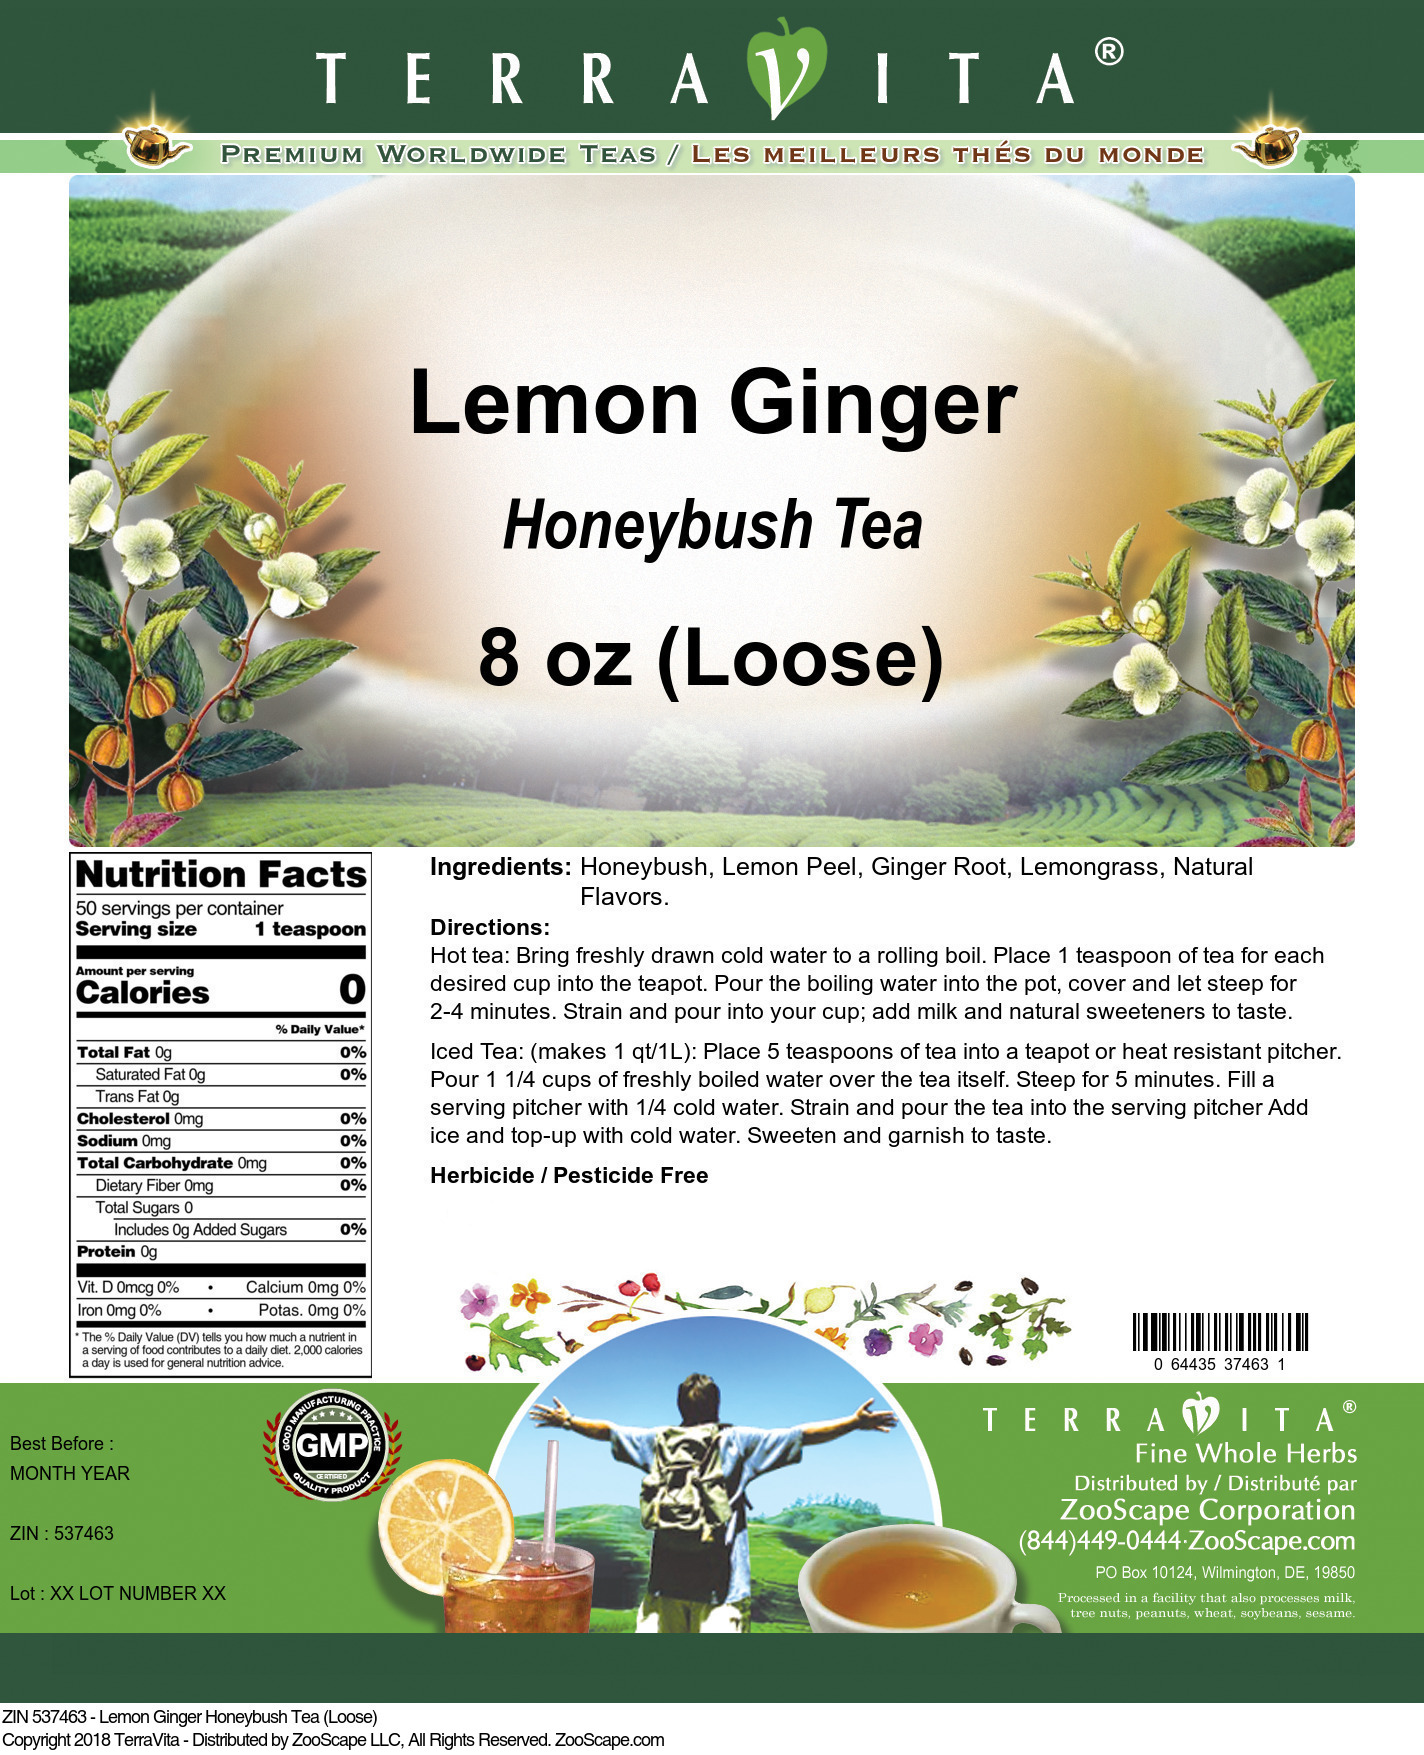 Lemon Ginger Honeybush Tea (Loose) - Label